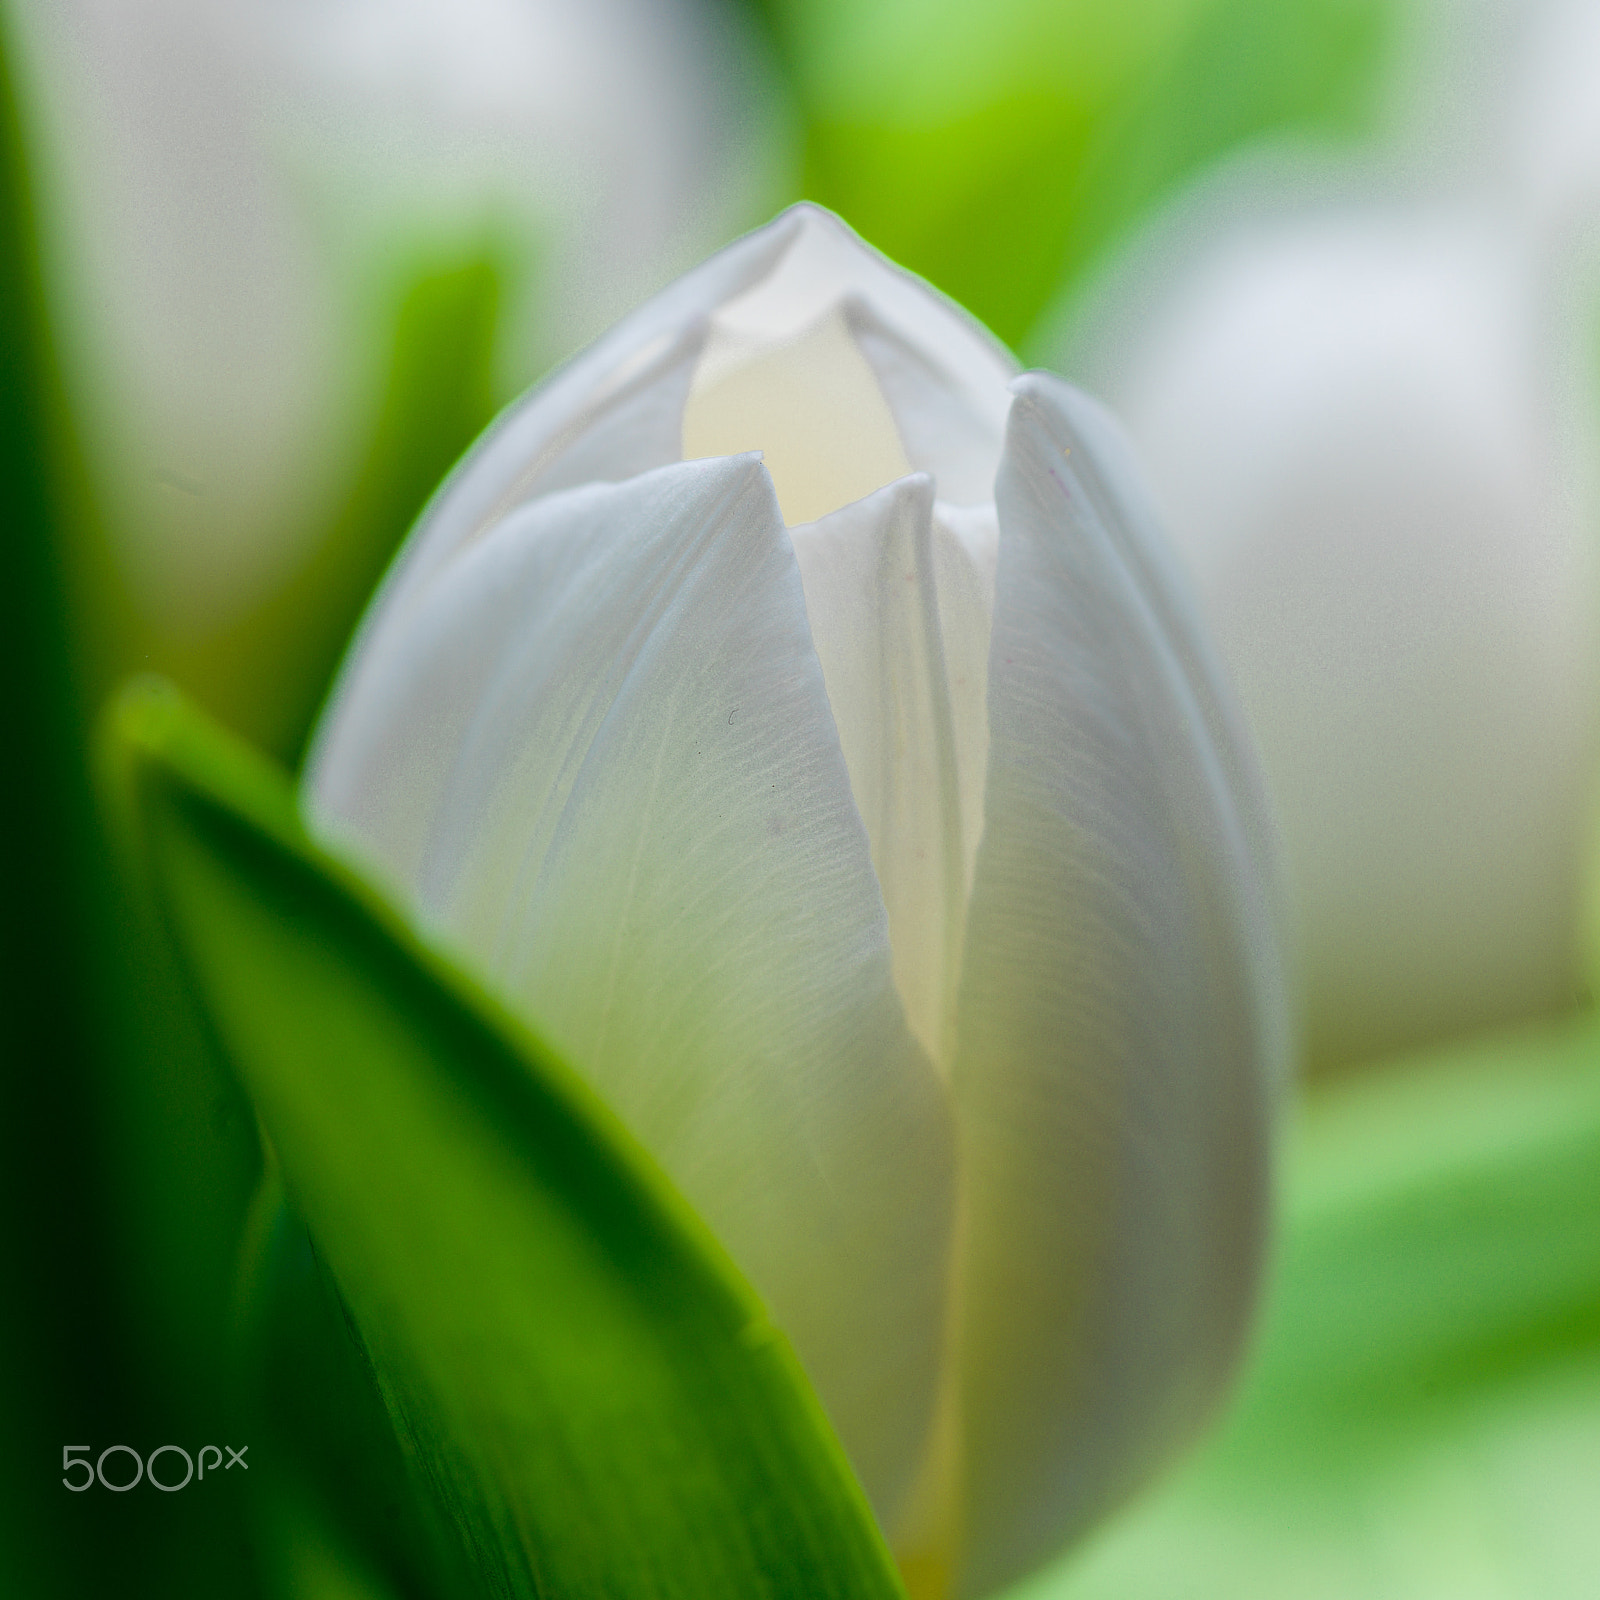 HC 120 sample photo. White tulip photography